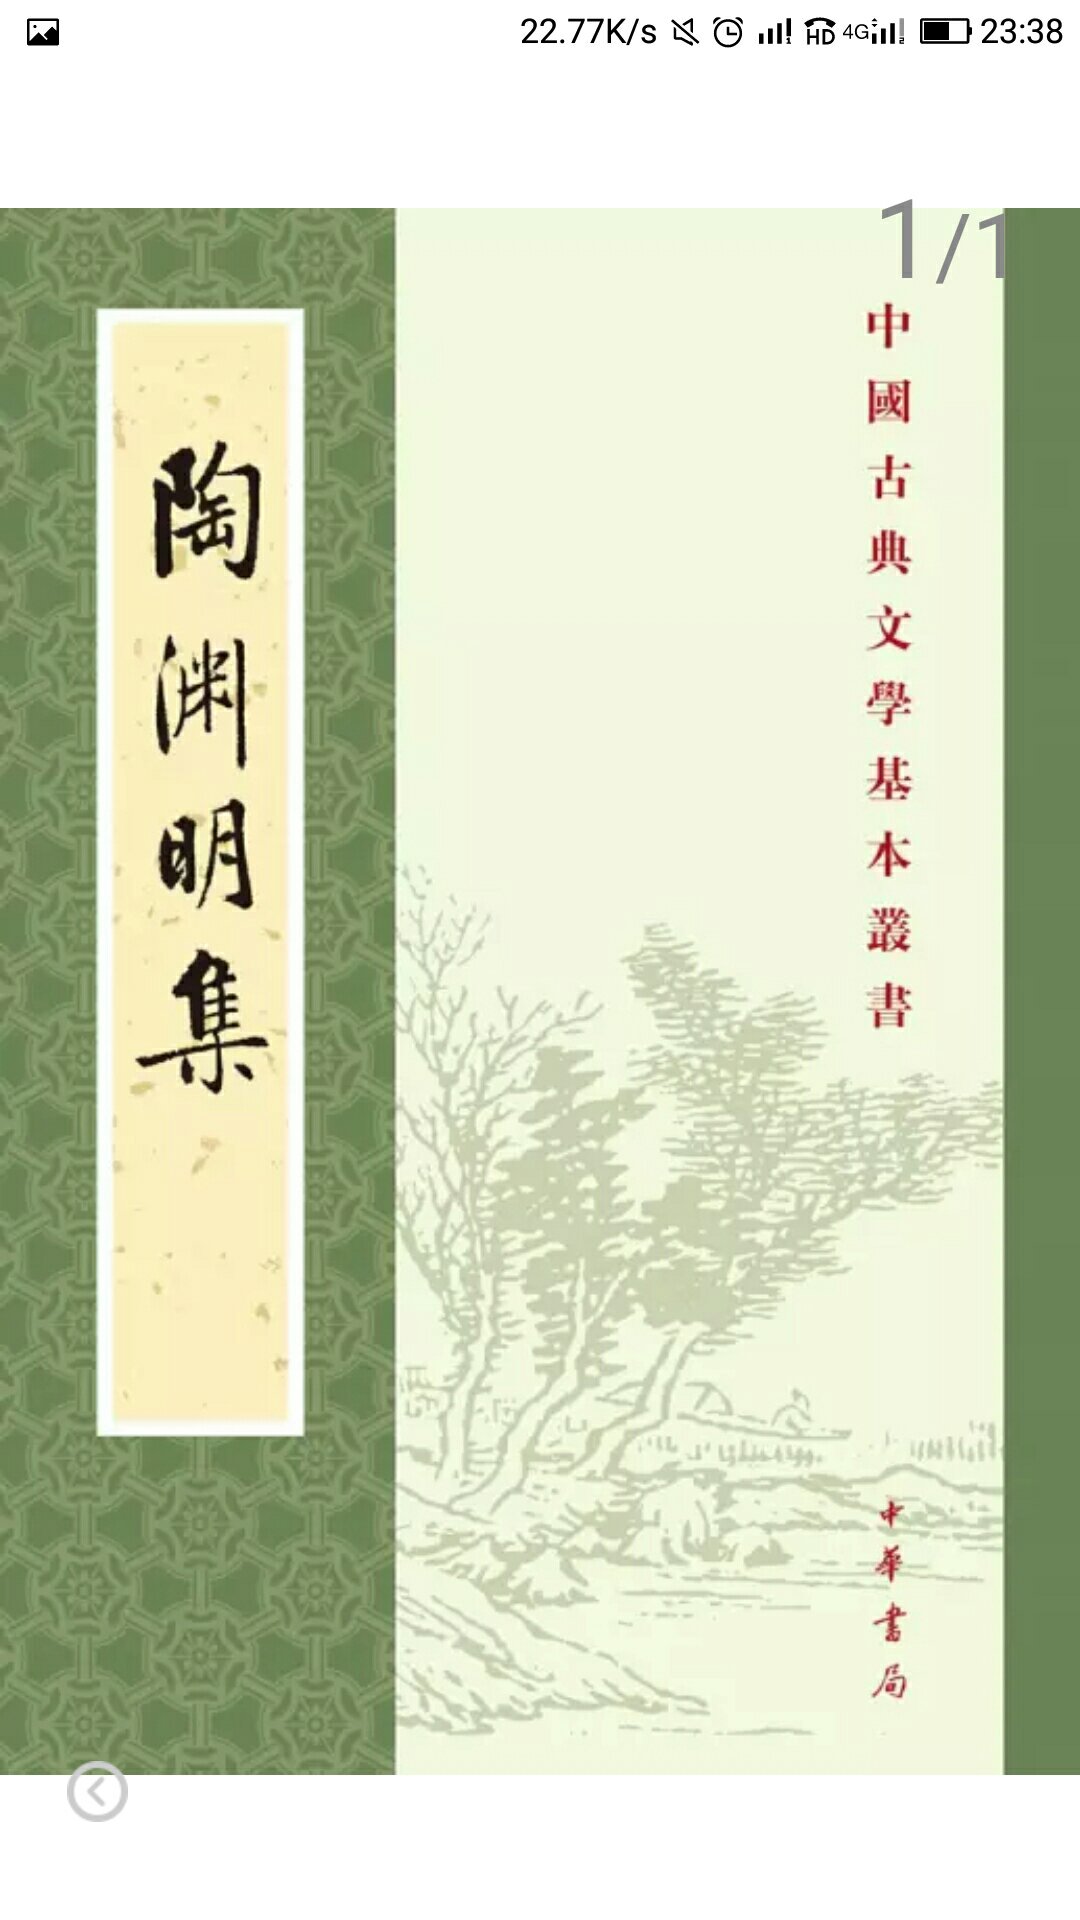 中华书局的书值得信赖，喜欢陶渊明。